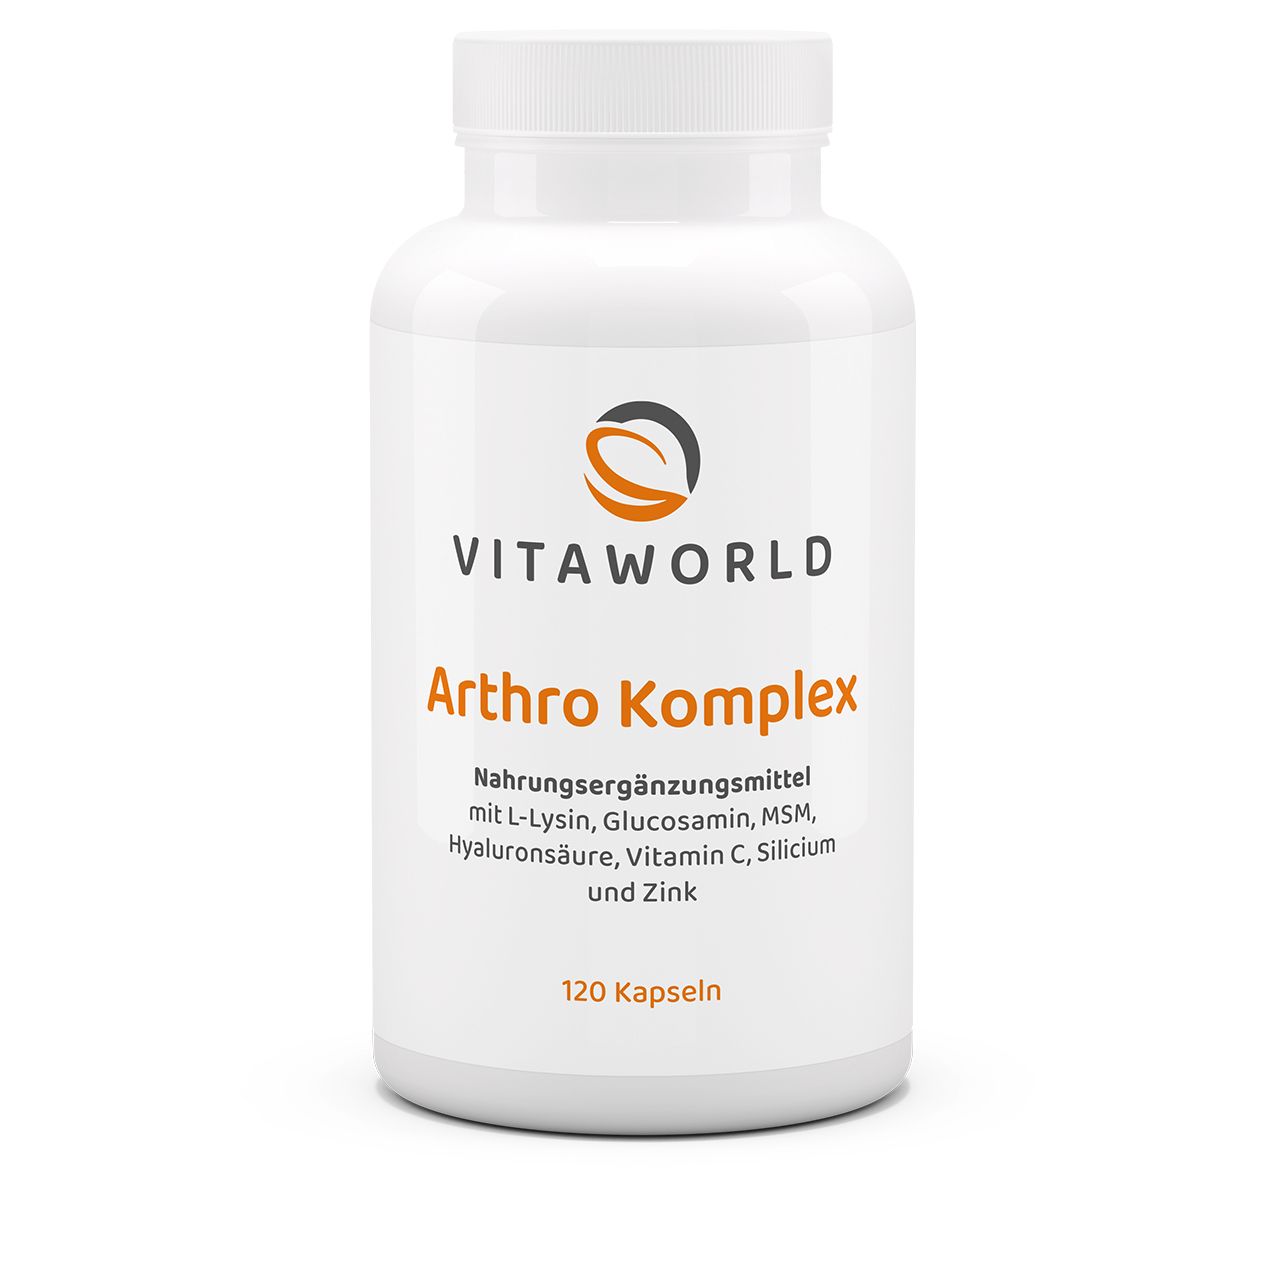 Vitaworld Arthro Komplex | 120 Kapseln | Vegane Unterstützung für Knochen & Gelenke | Mit Pflanzlichem Glucosamin & MSM